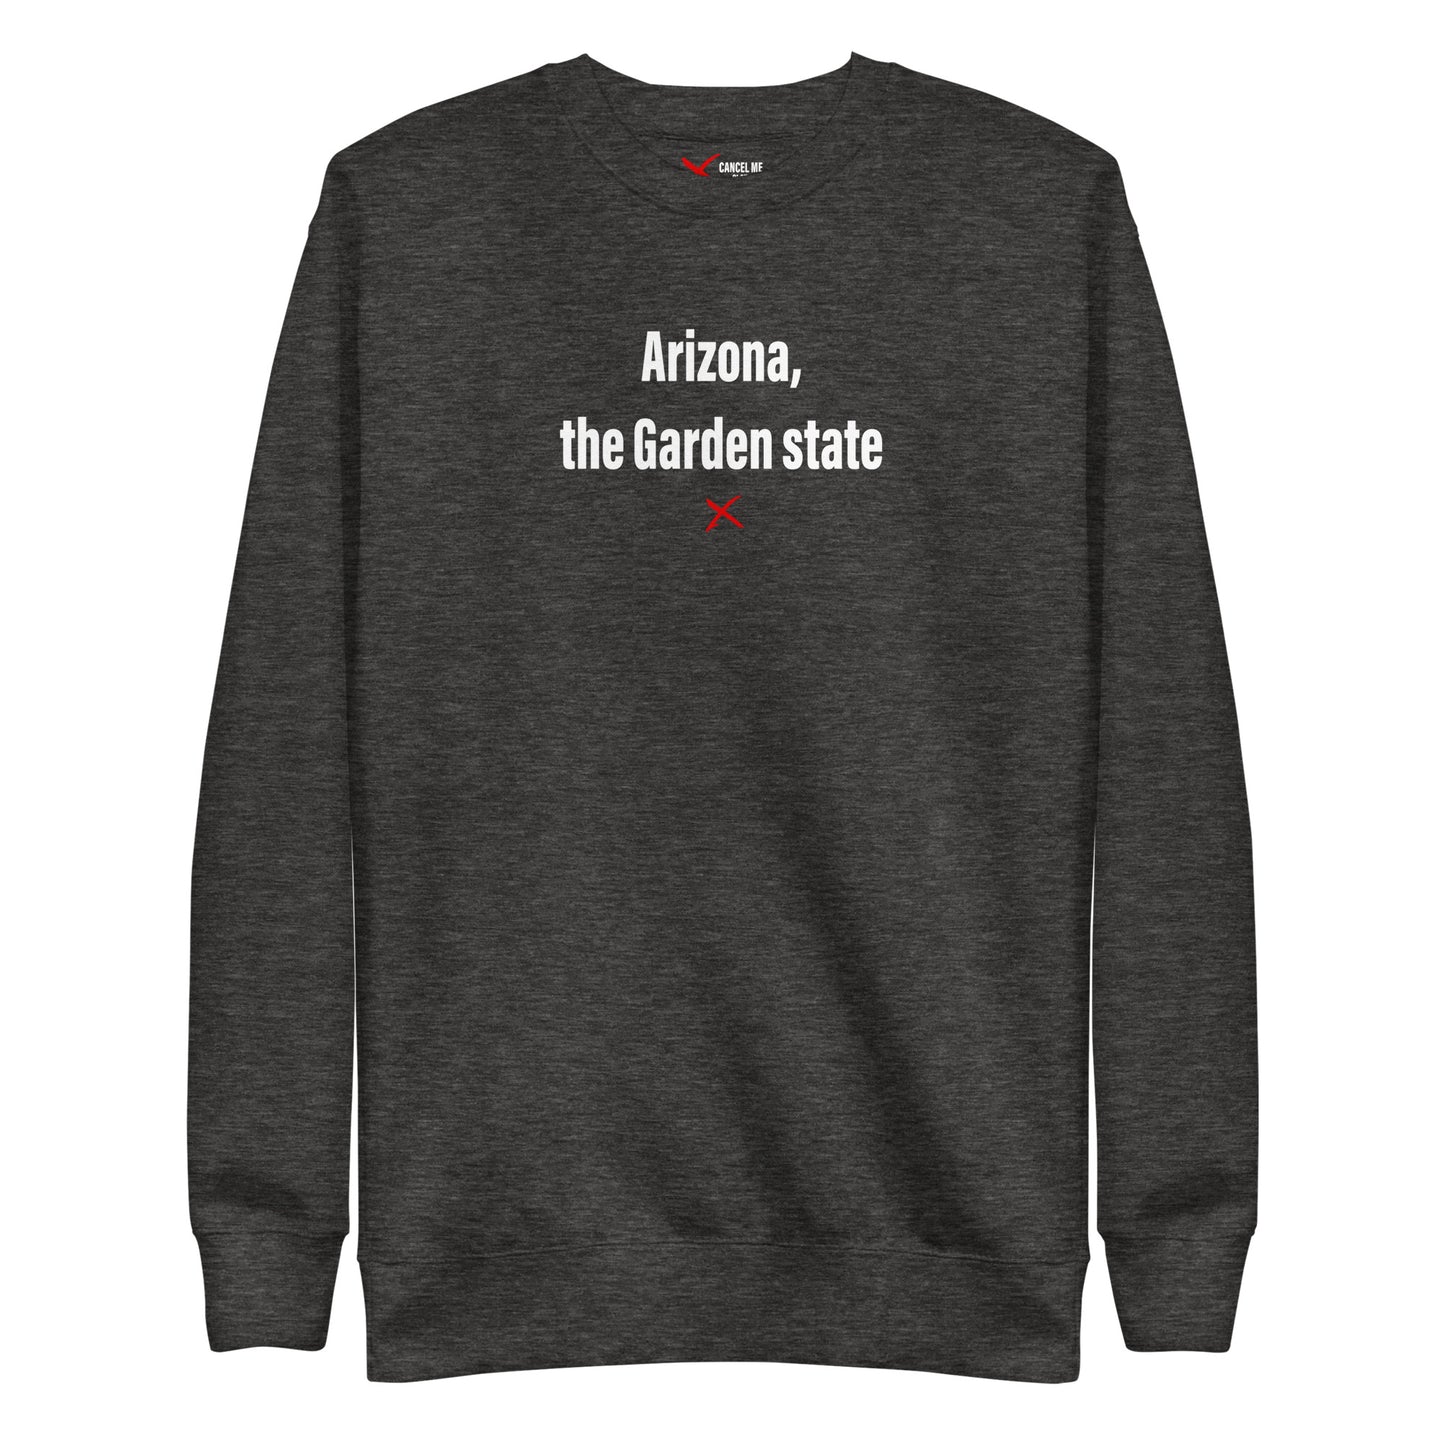 Arizona, the Garden state - Sweatshirt